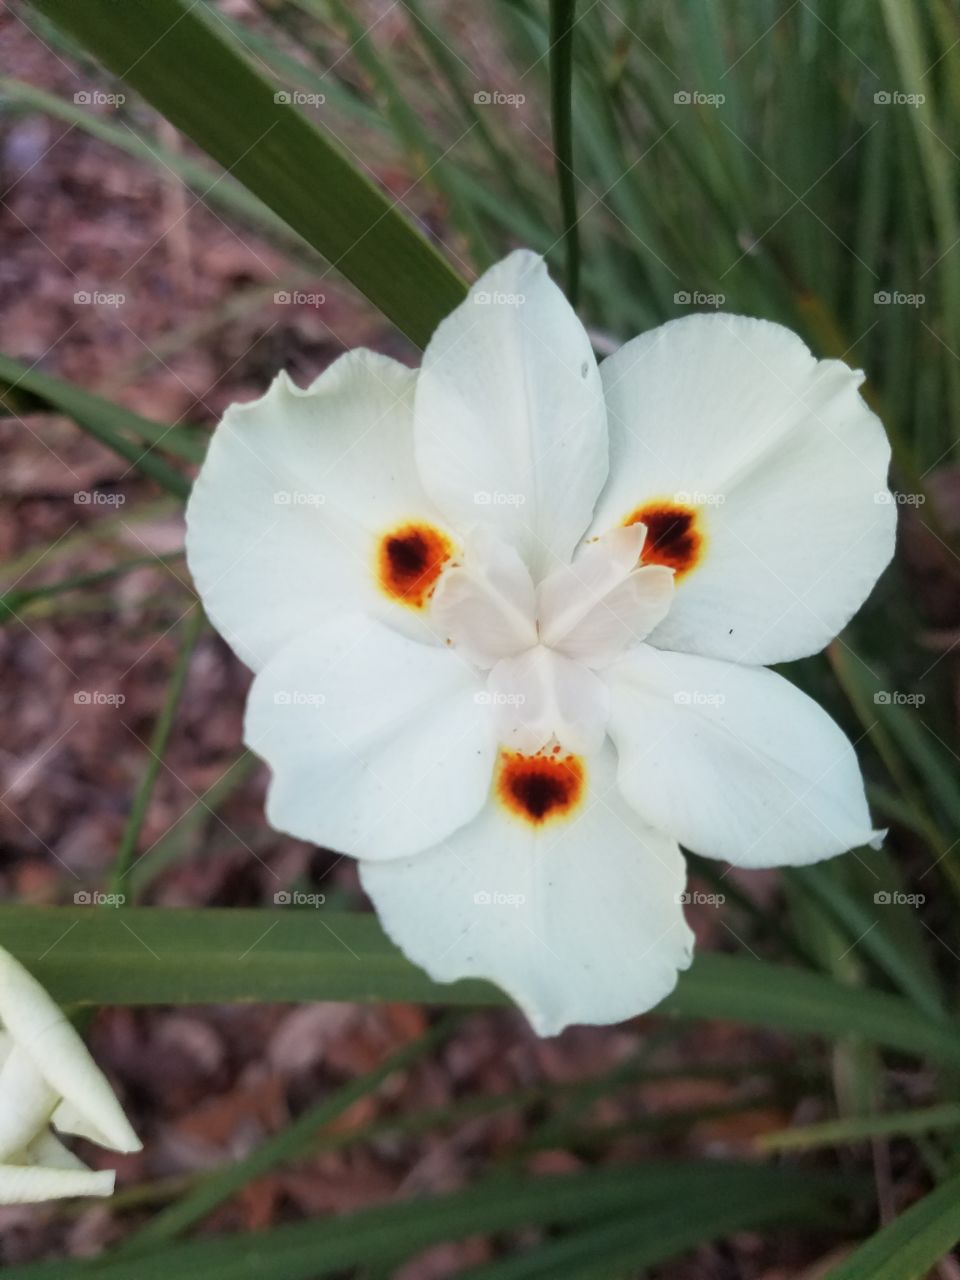 Three spot flower